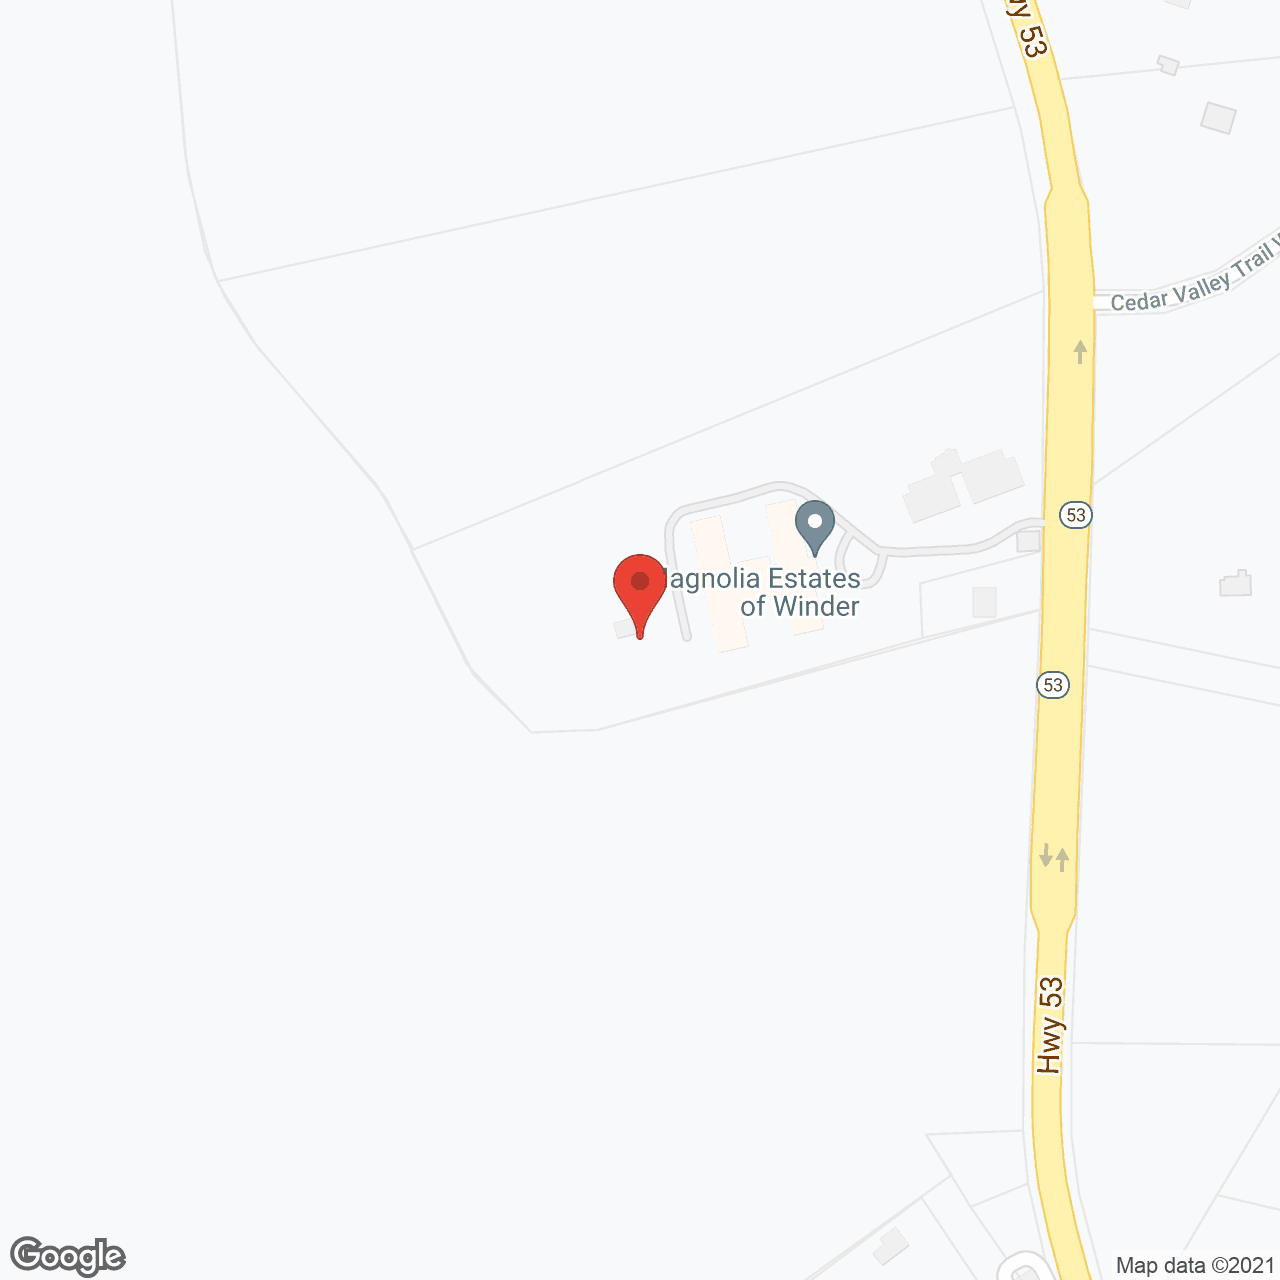 Magnolia Estates of Winder in google map